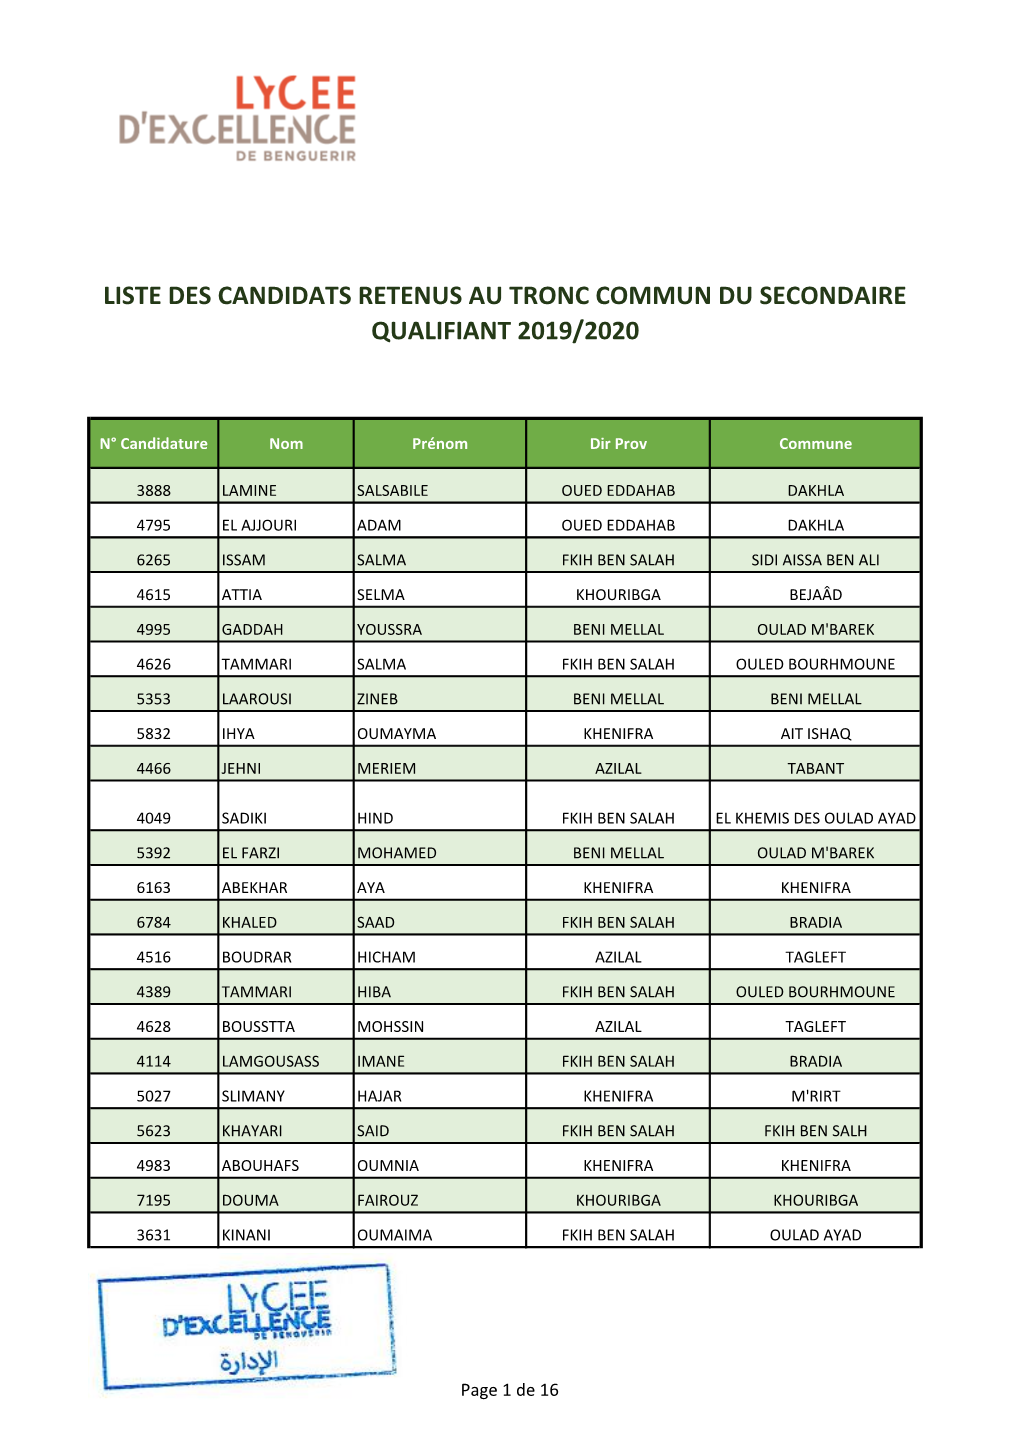 Liste Des Candidats Retenus Au Tronc Commun Du Secondaire Qualifiant 2019/2020